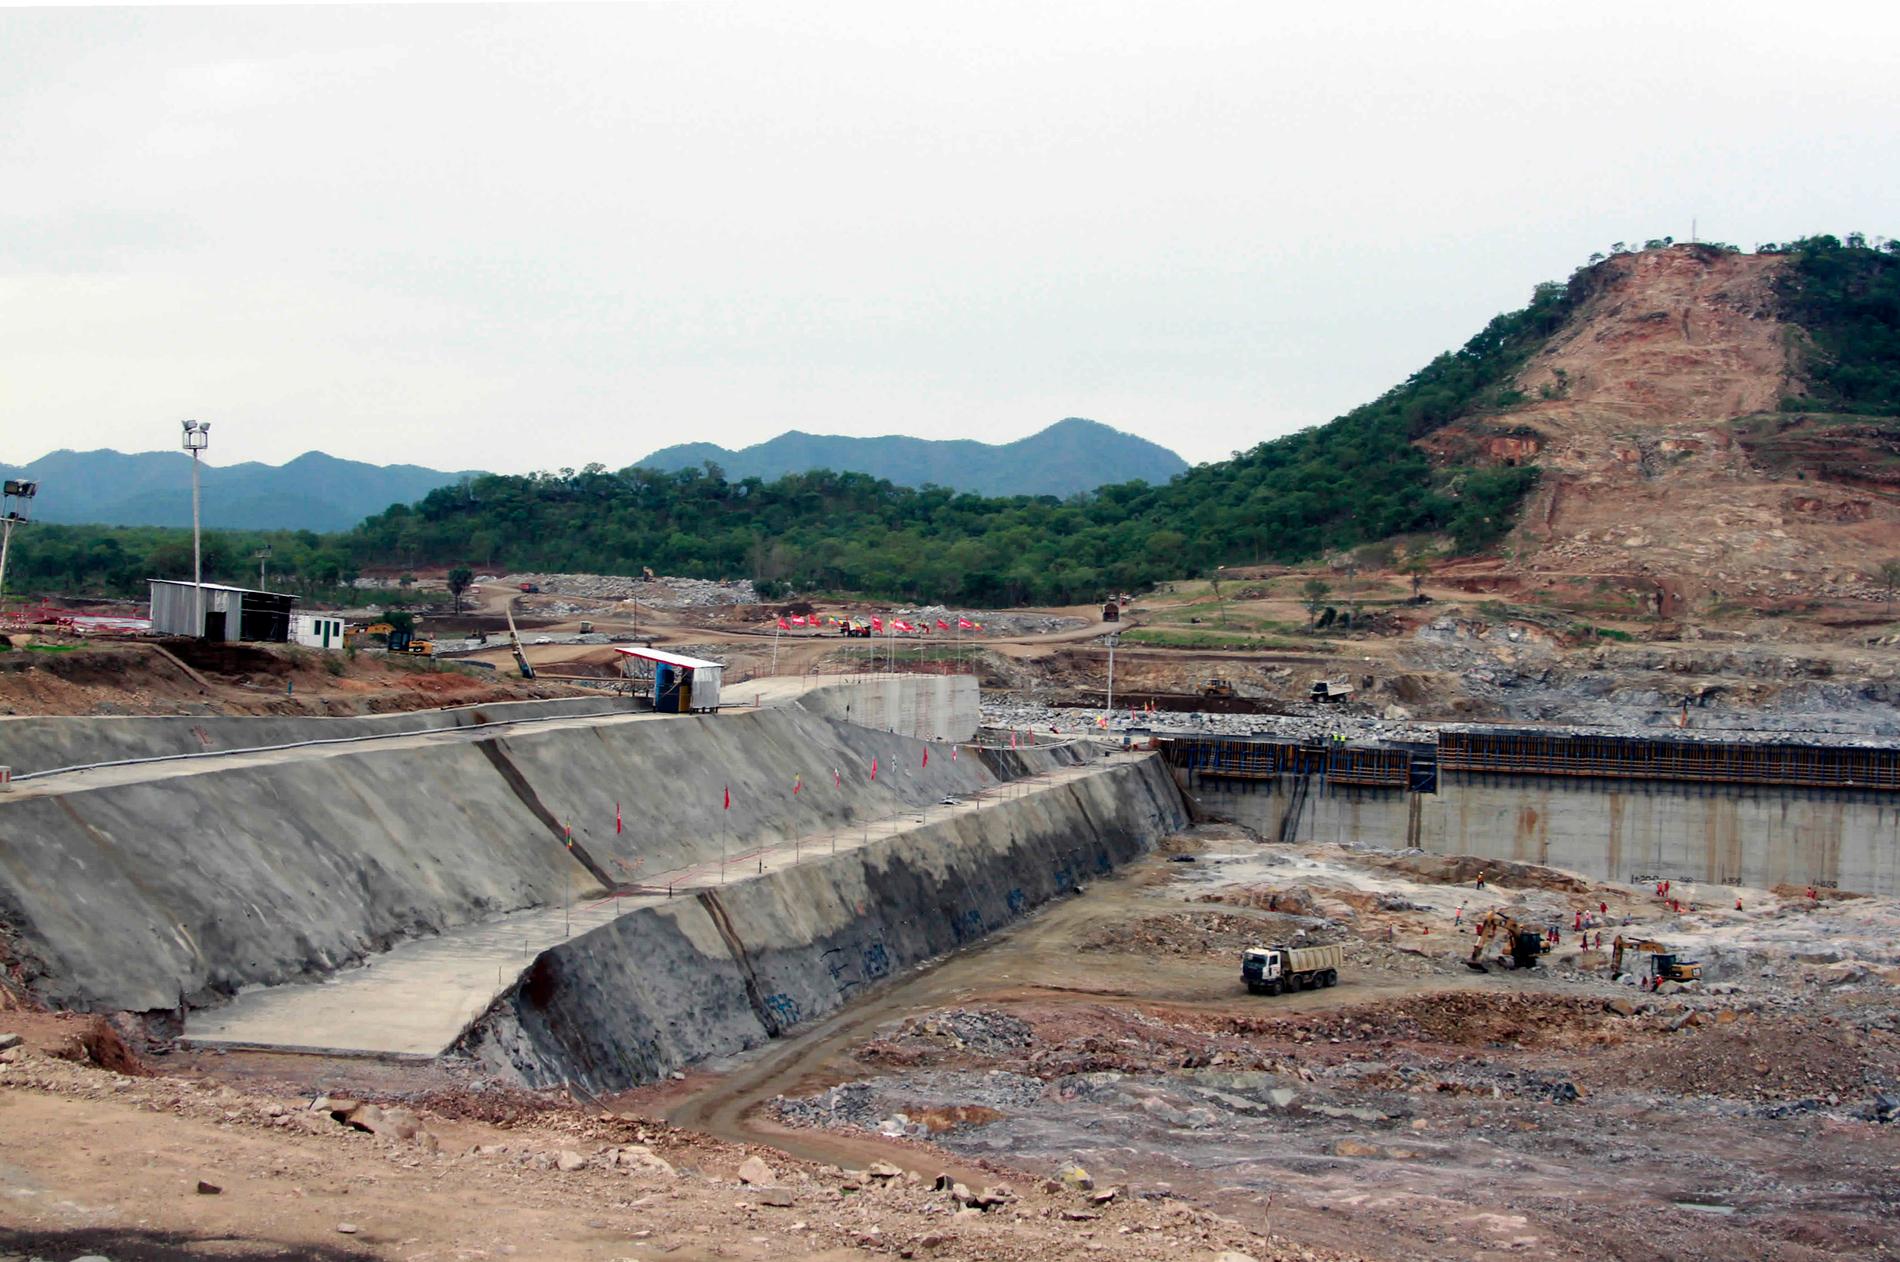 Vattenkraft är en av Etiopiens viktigaste naturtillgångar. Bygget av kontinentens största vattenkraftsdamm har dock rört upp ilska nedströms, där man är oroade över minskade vattenflöden när dammen ska fyllas. Arkivbild från bygget 2013.